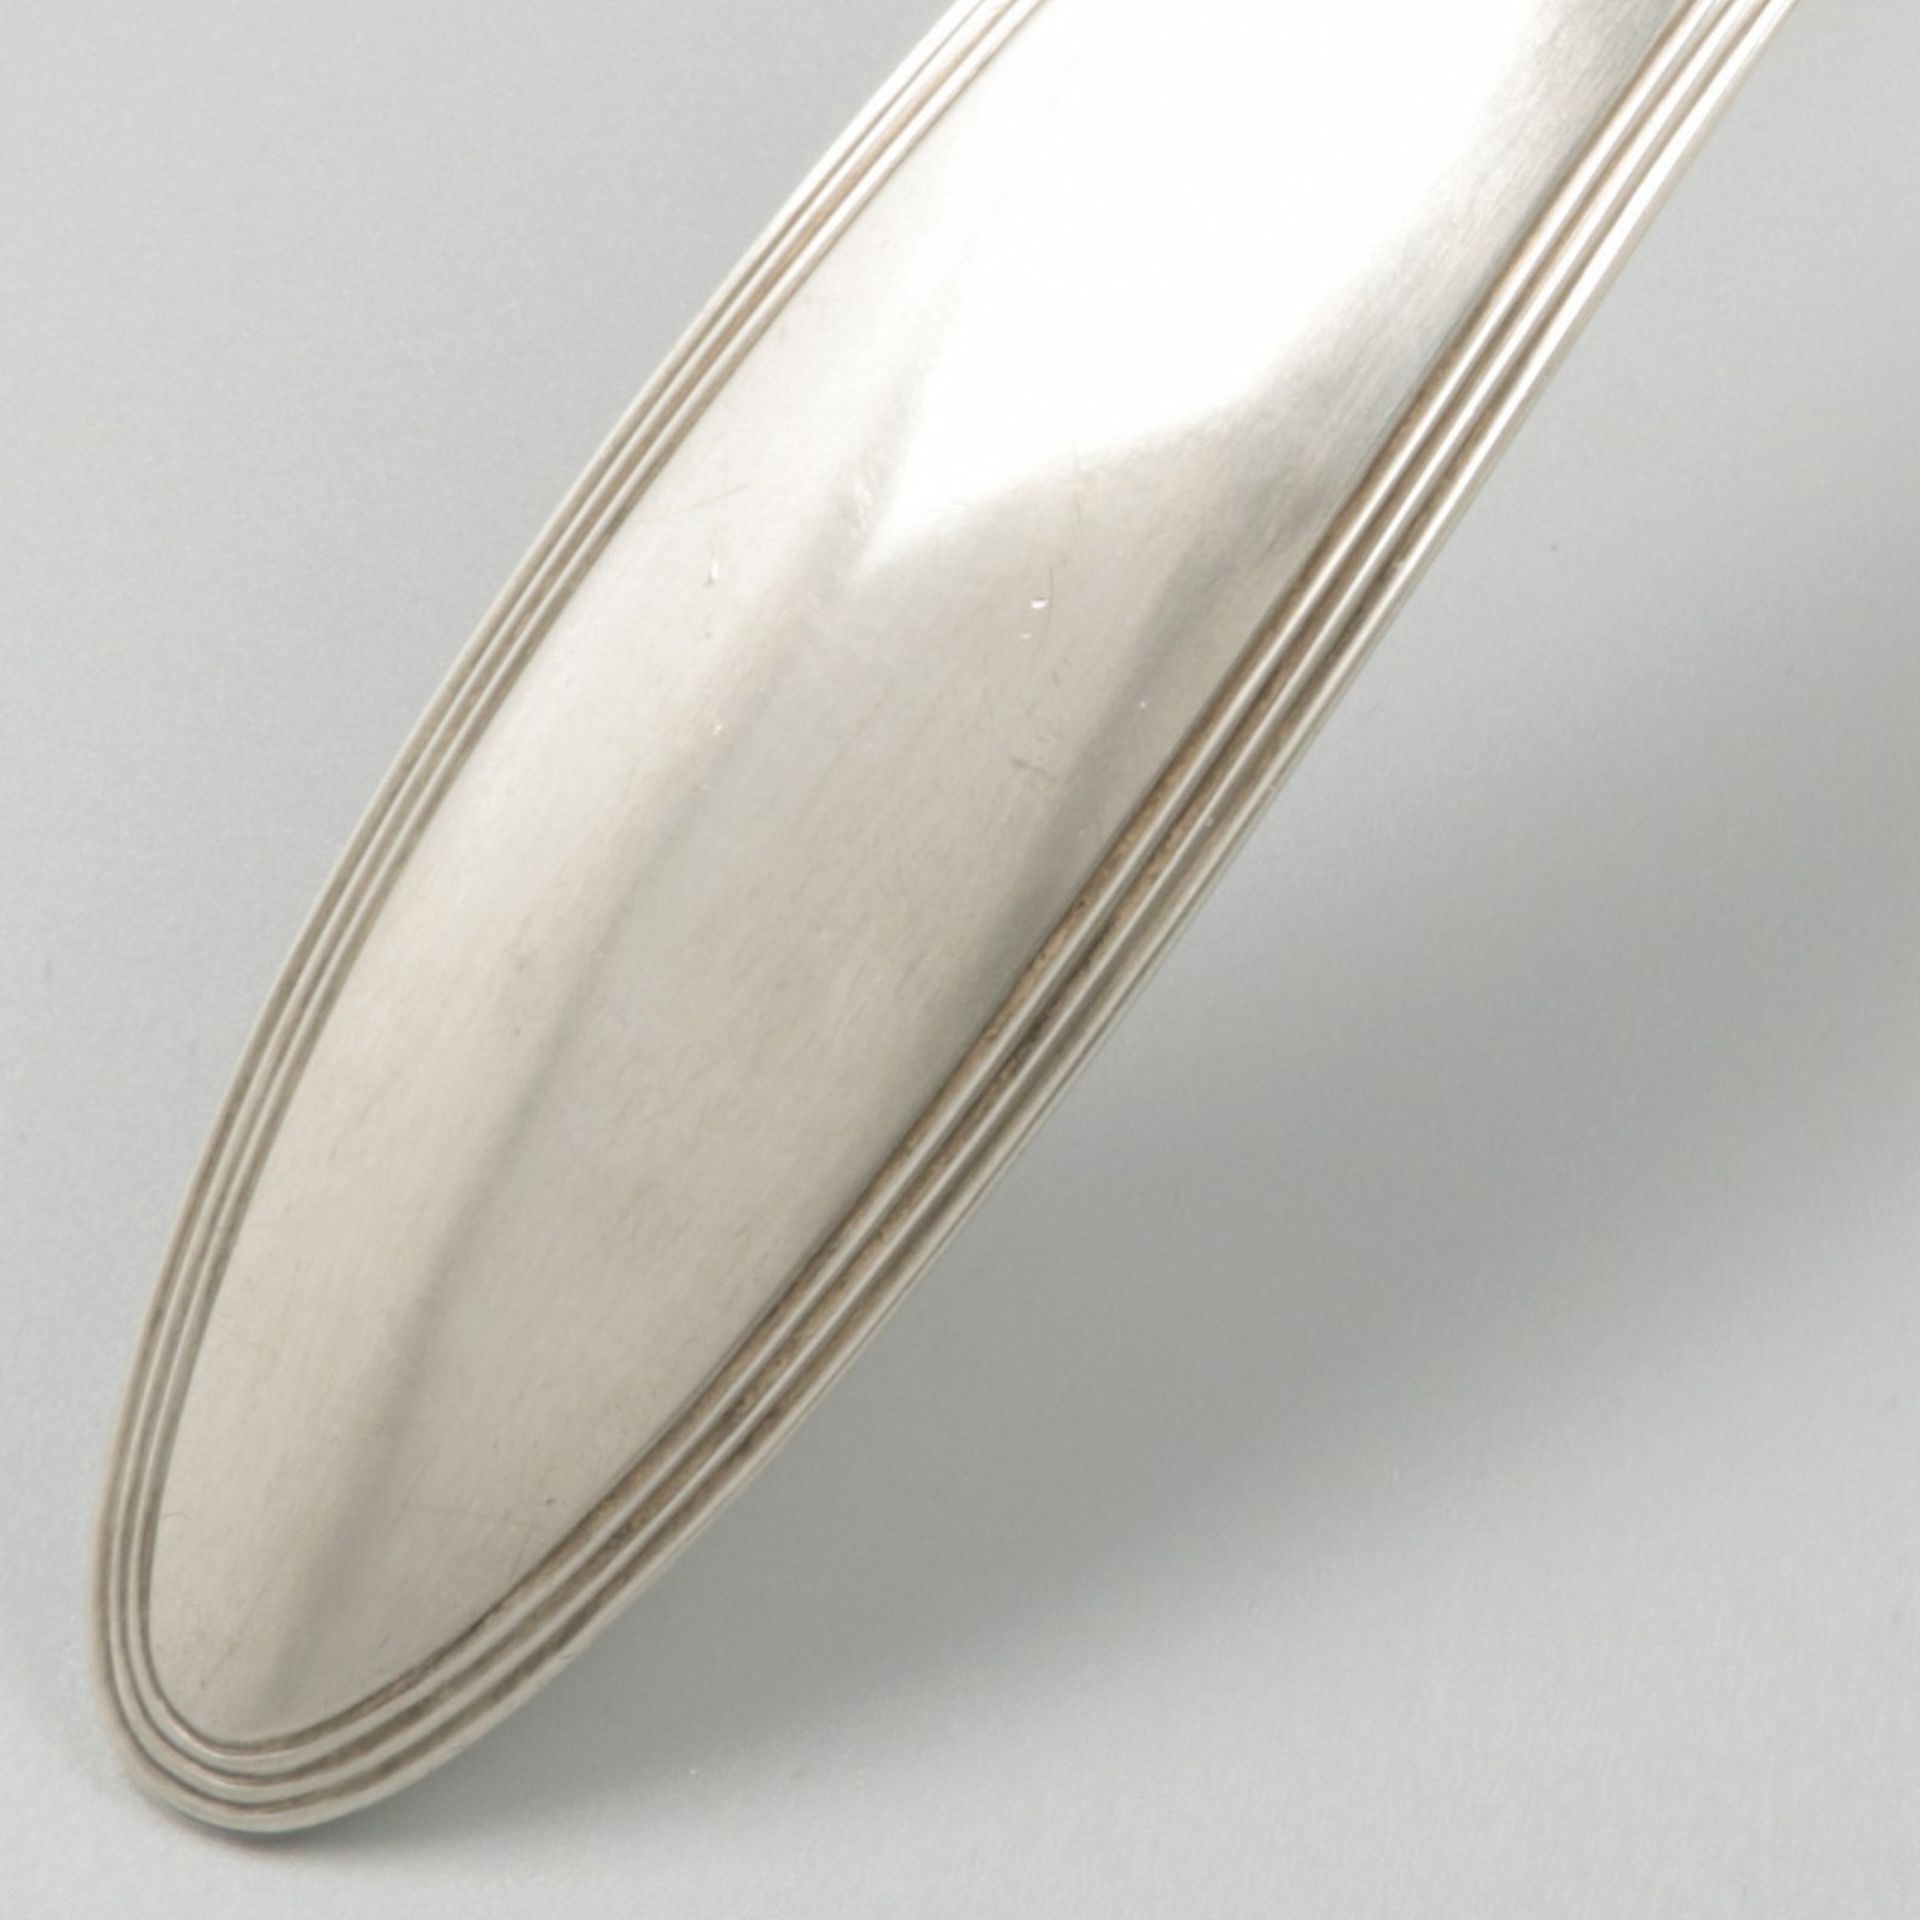 Soup spoon (The Hague, Johannes Hendrikus Bouscholten - 1837) silver. - Image 4 of 5